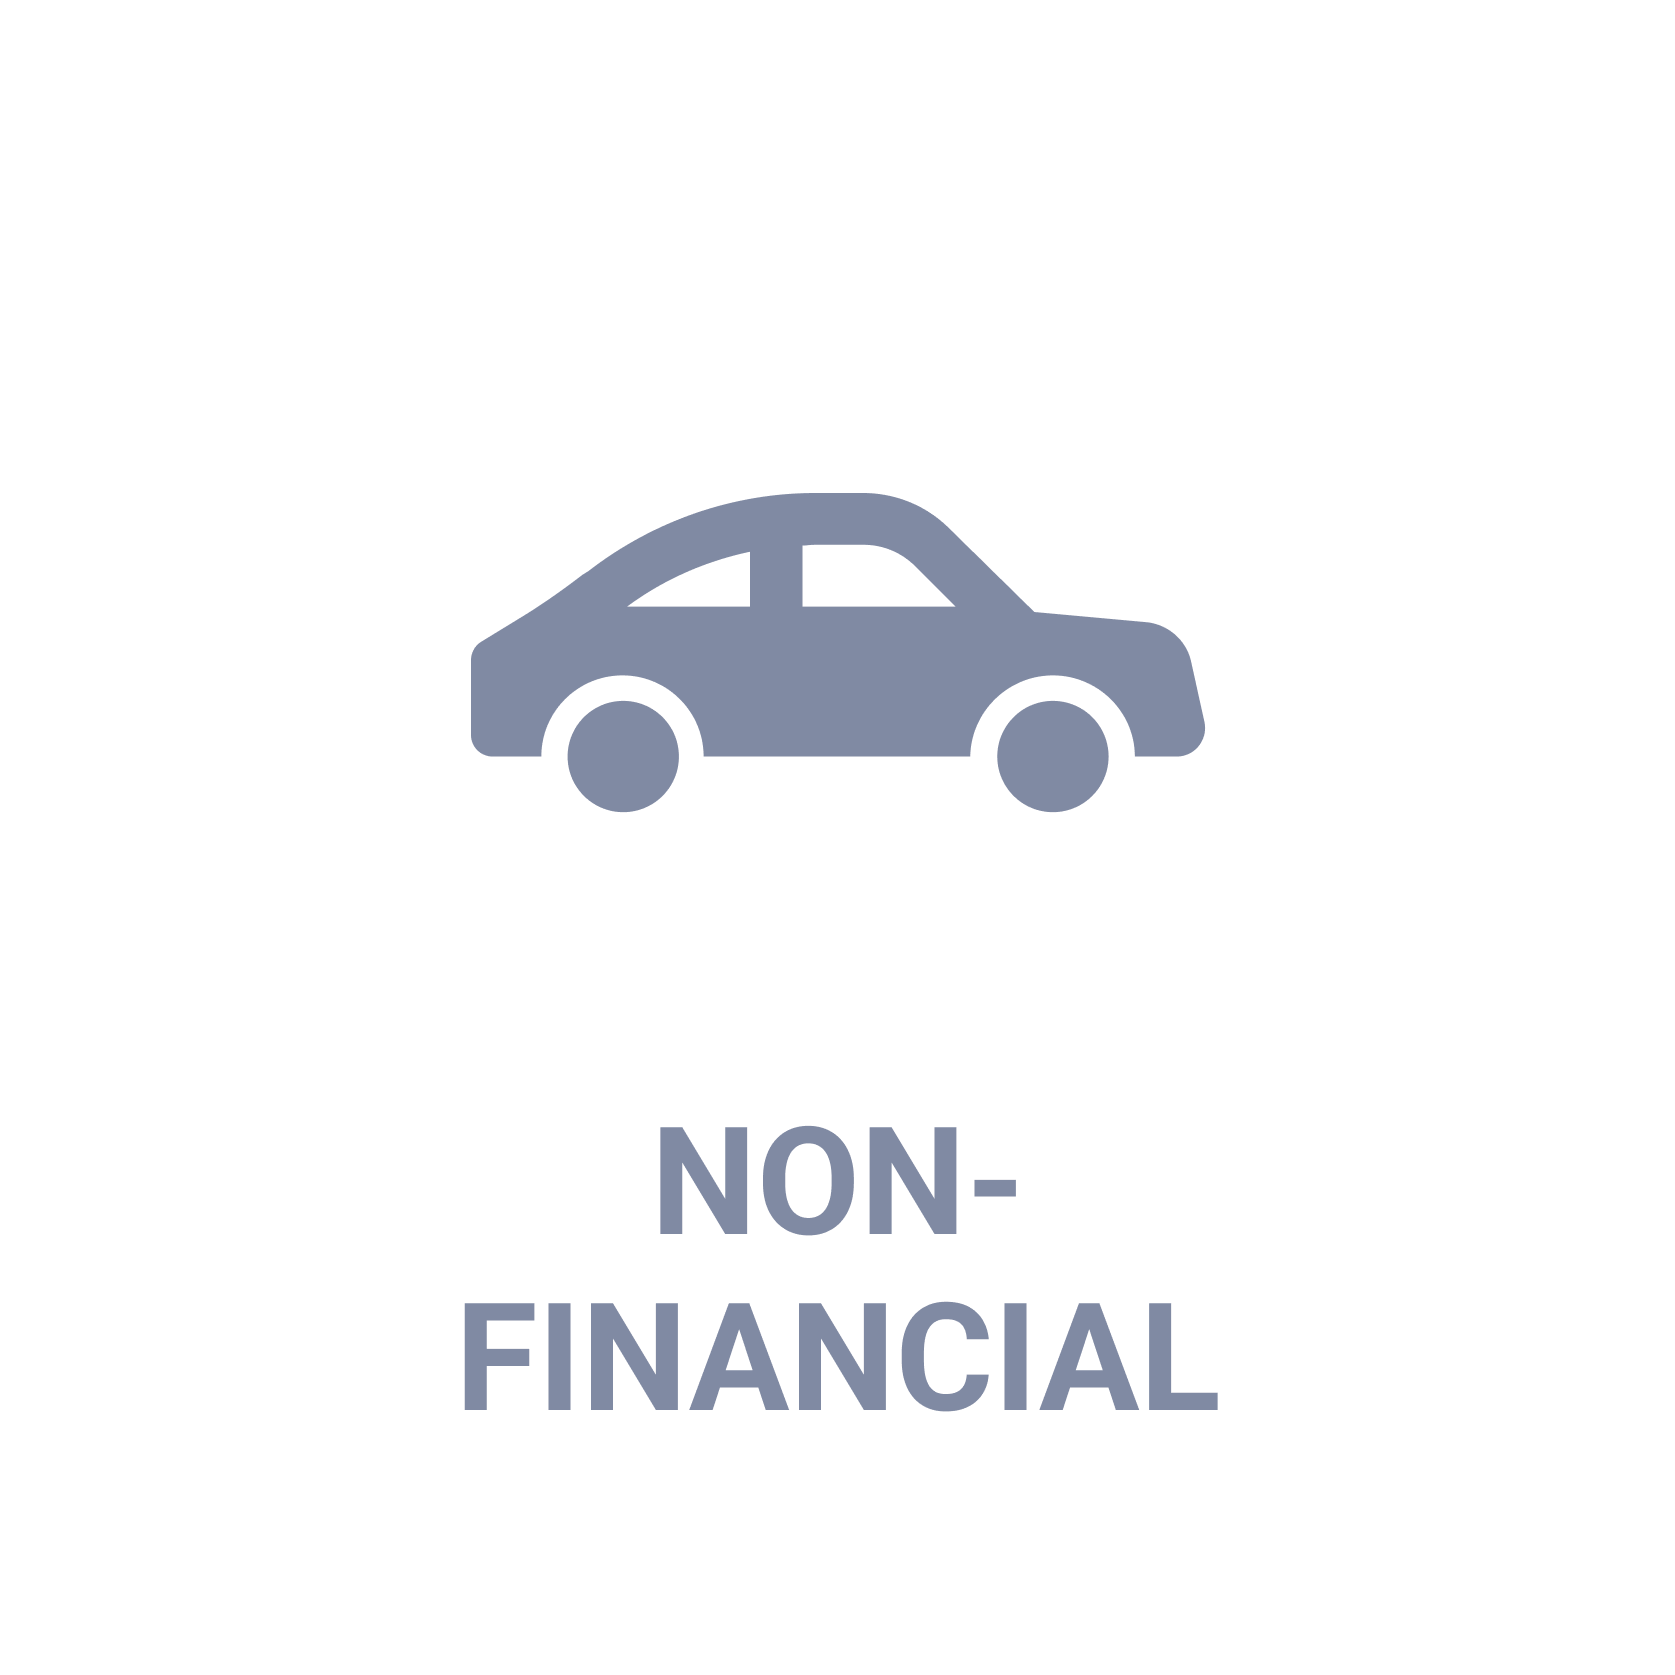 Non-Financial